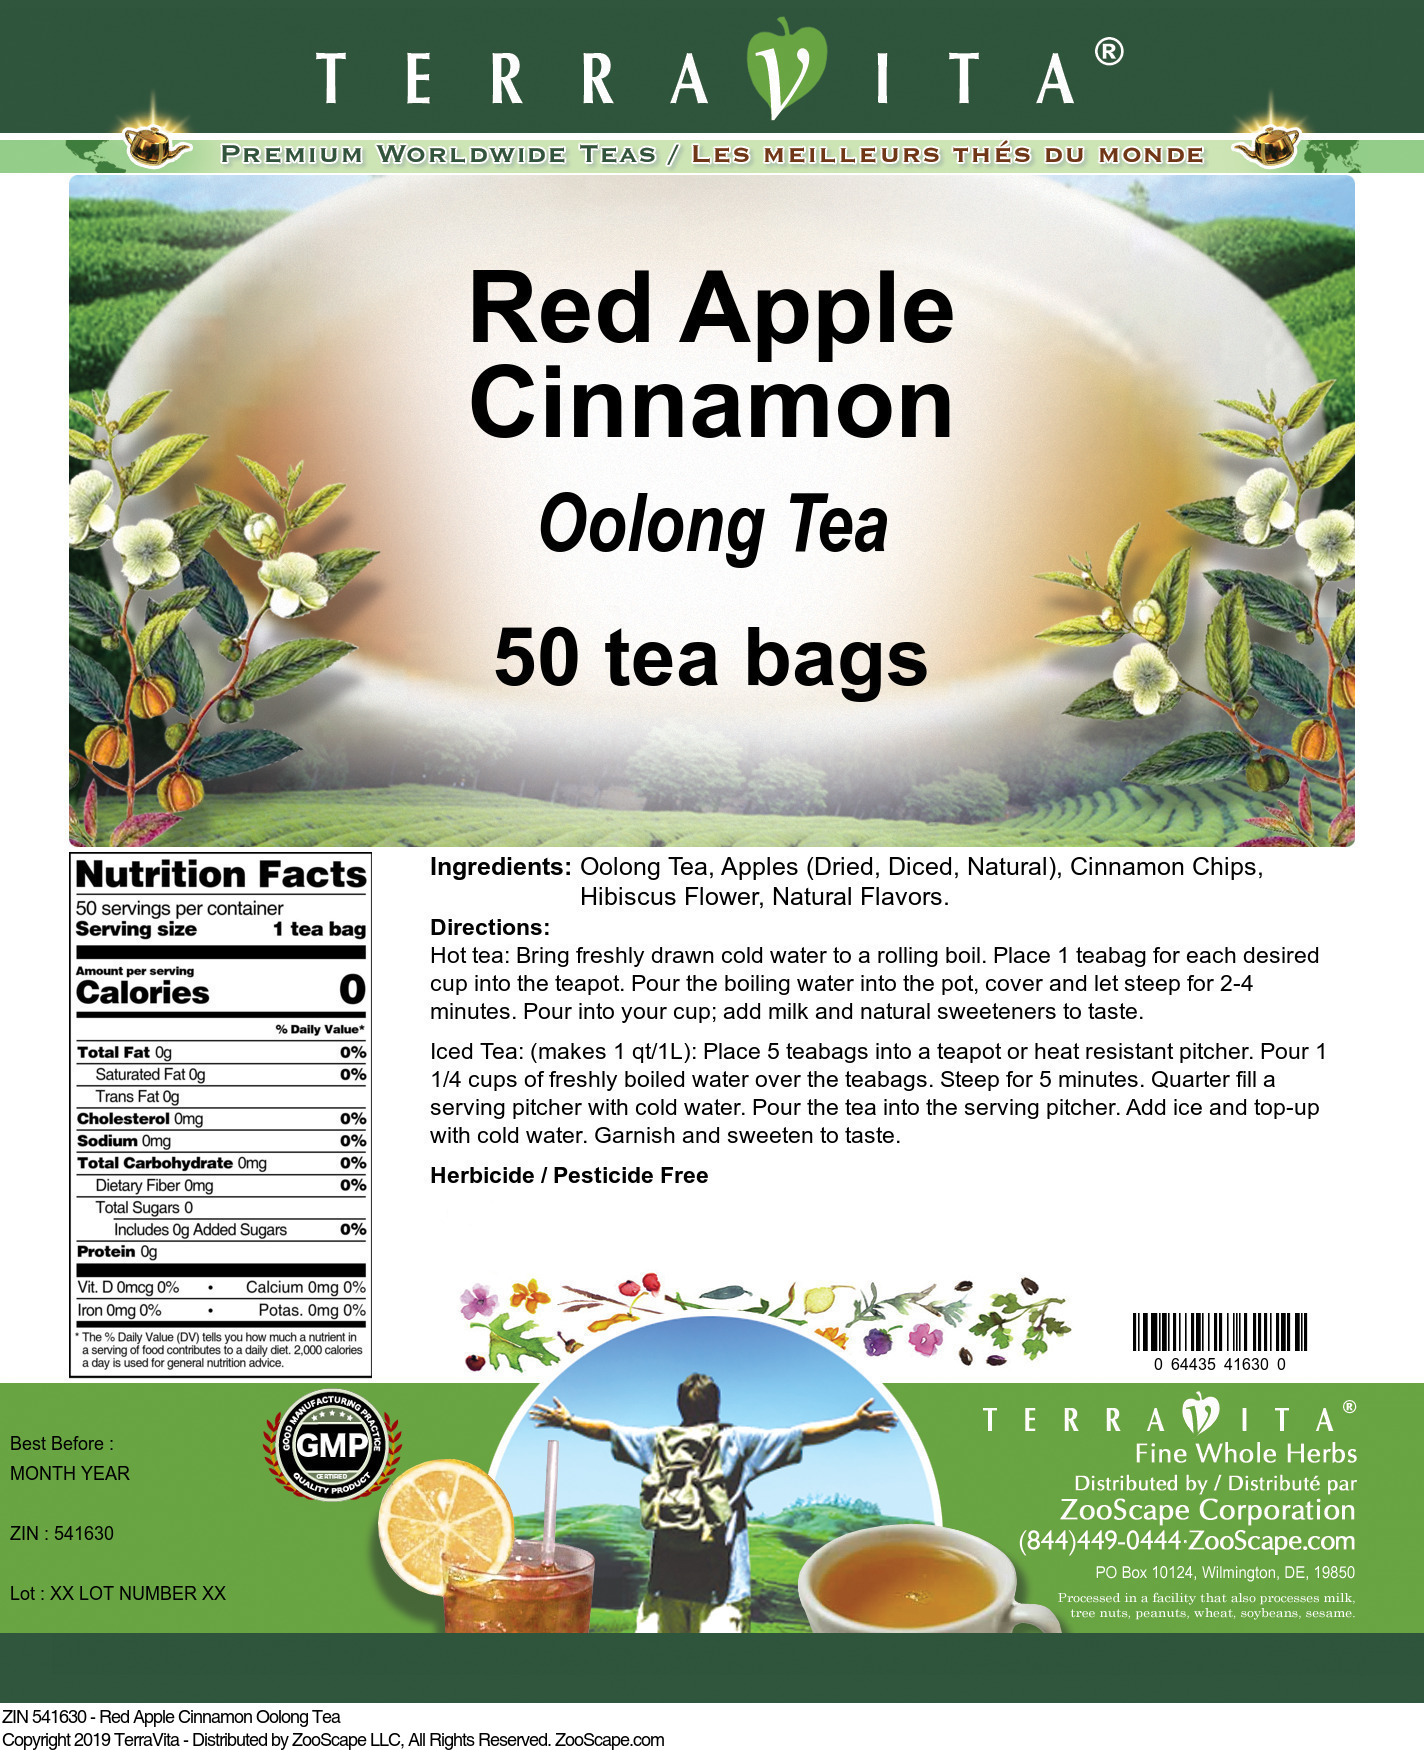 Red Apple Cinnamon Oolong Tea - Label